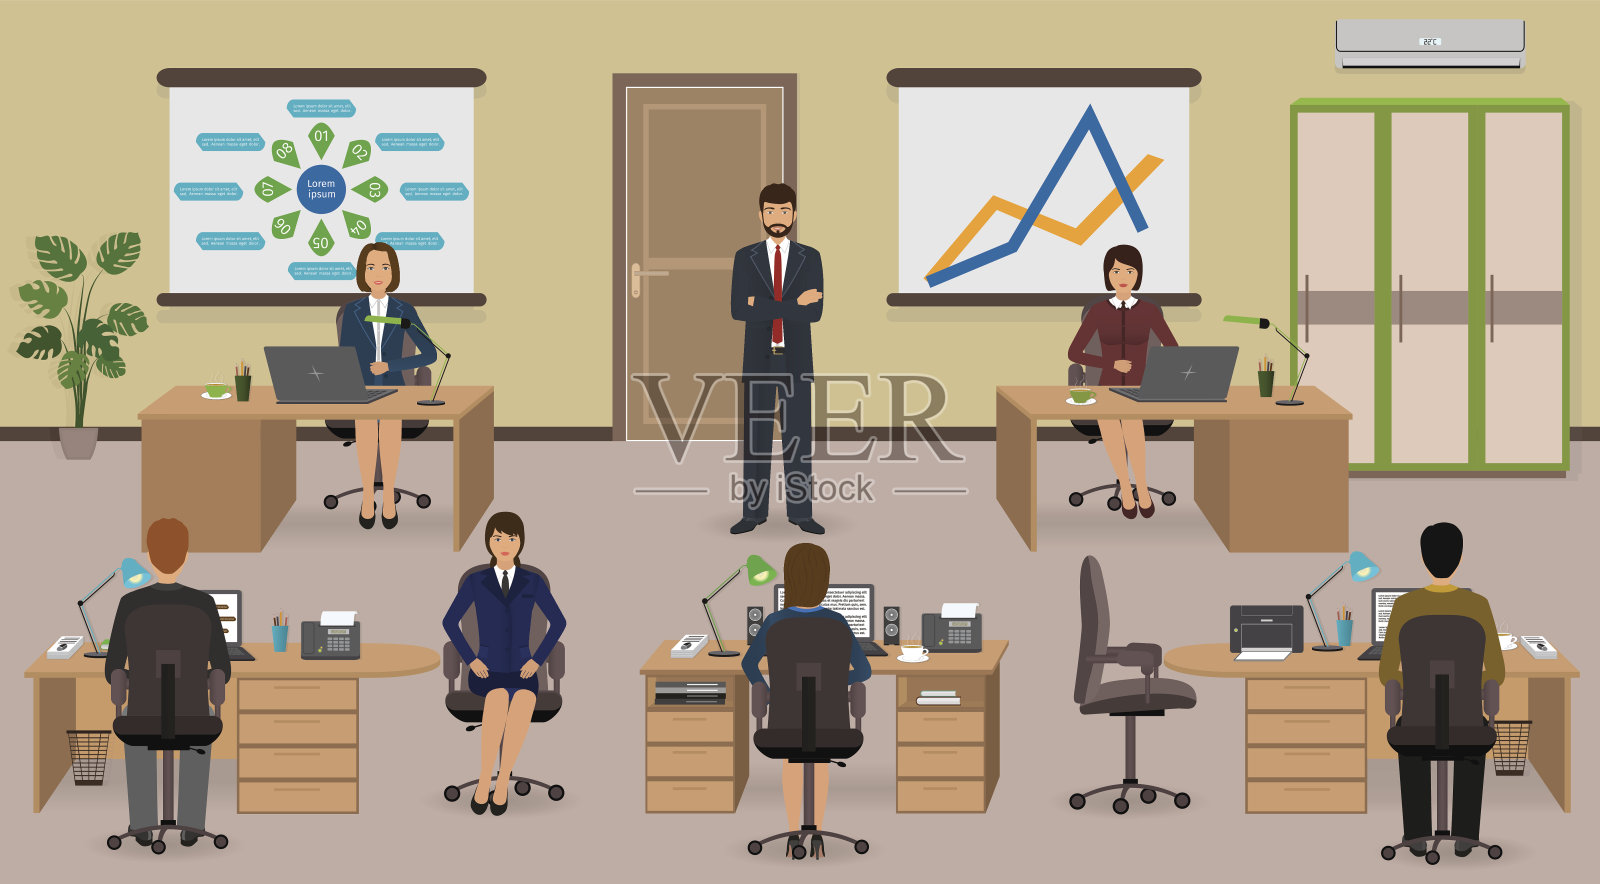 有员工和老板的办公室内部。团队合作业务情况。插画图片素材